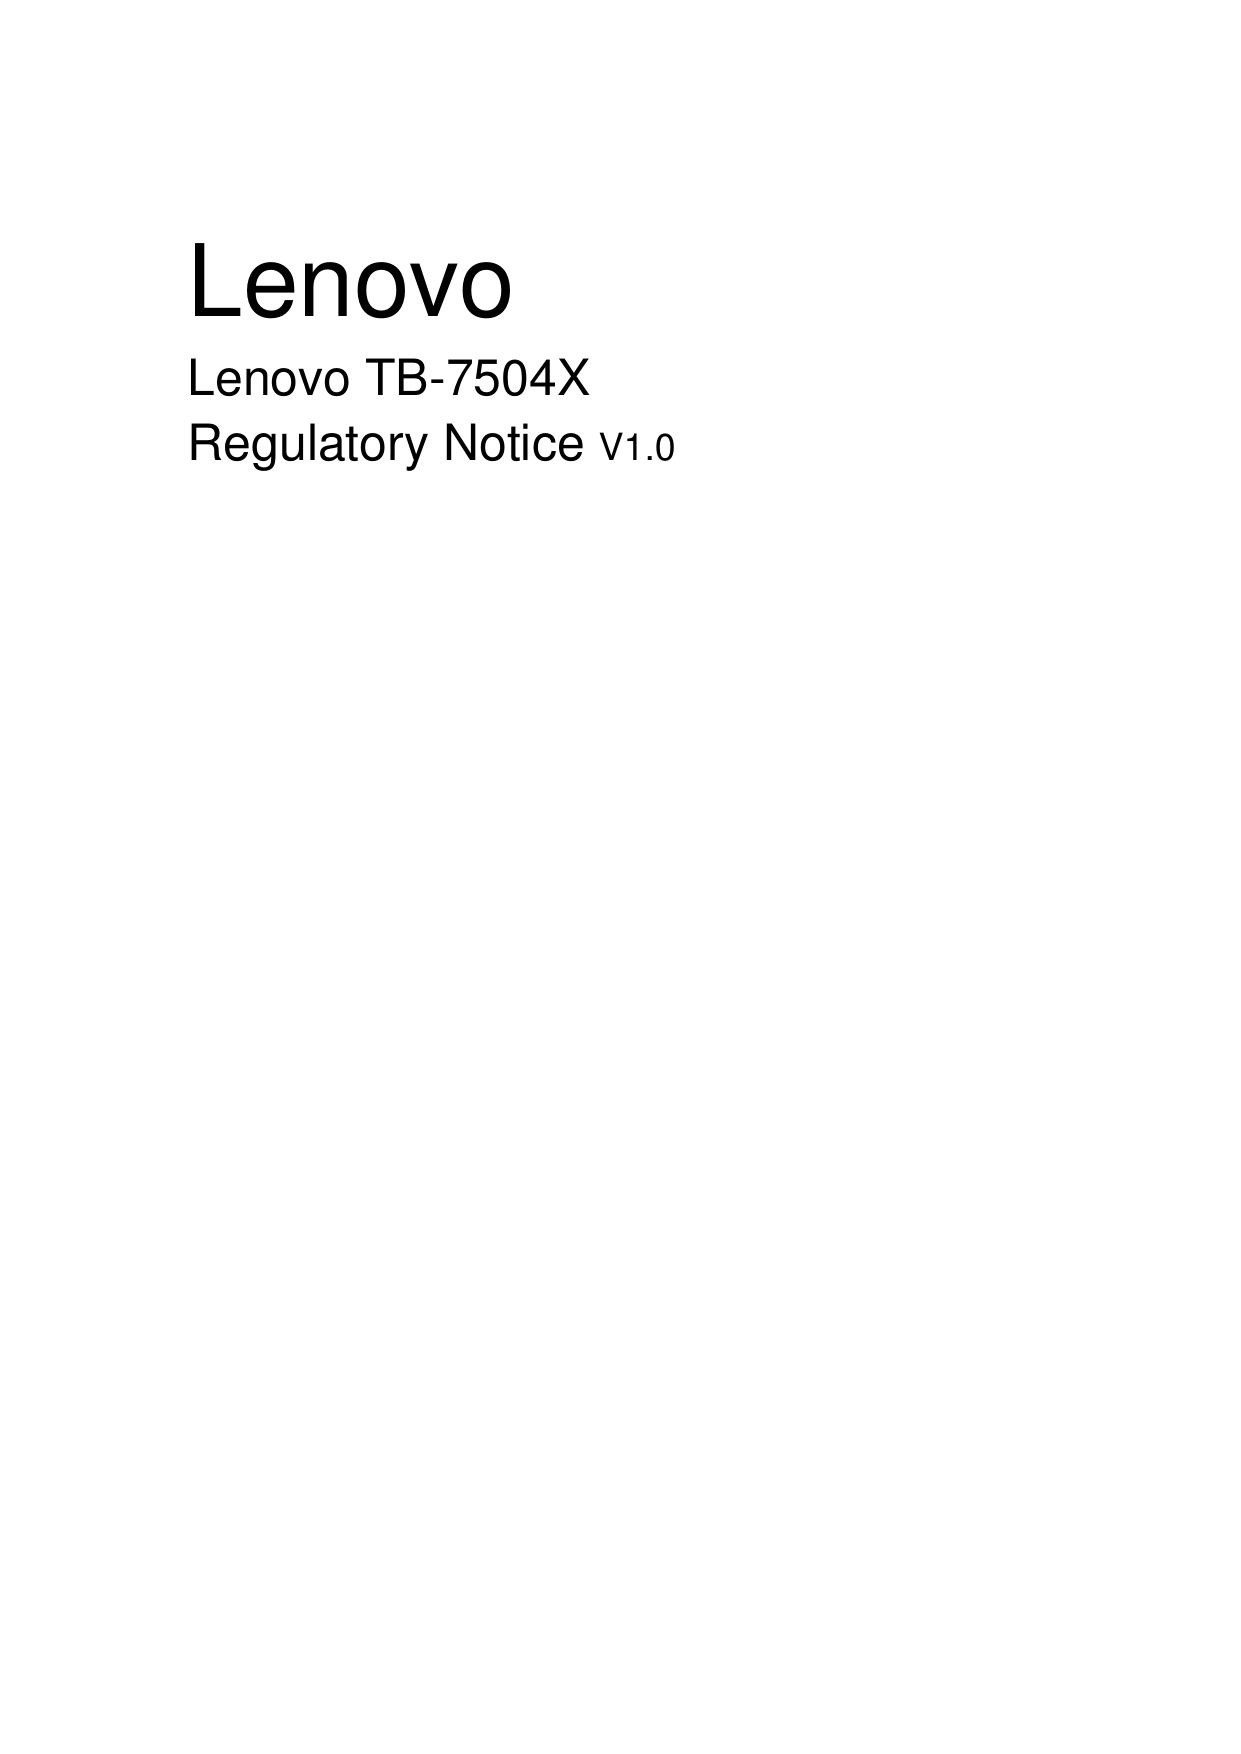   Lenovo Lenovo TB-7504X Regulatory Notice V1.0                                   